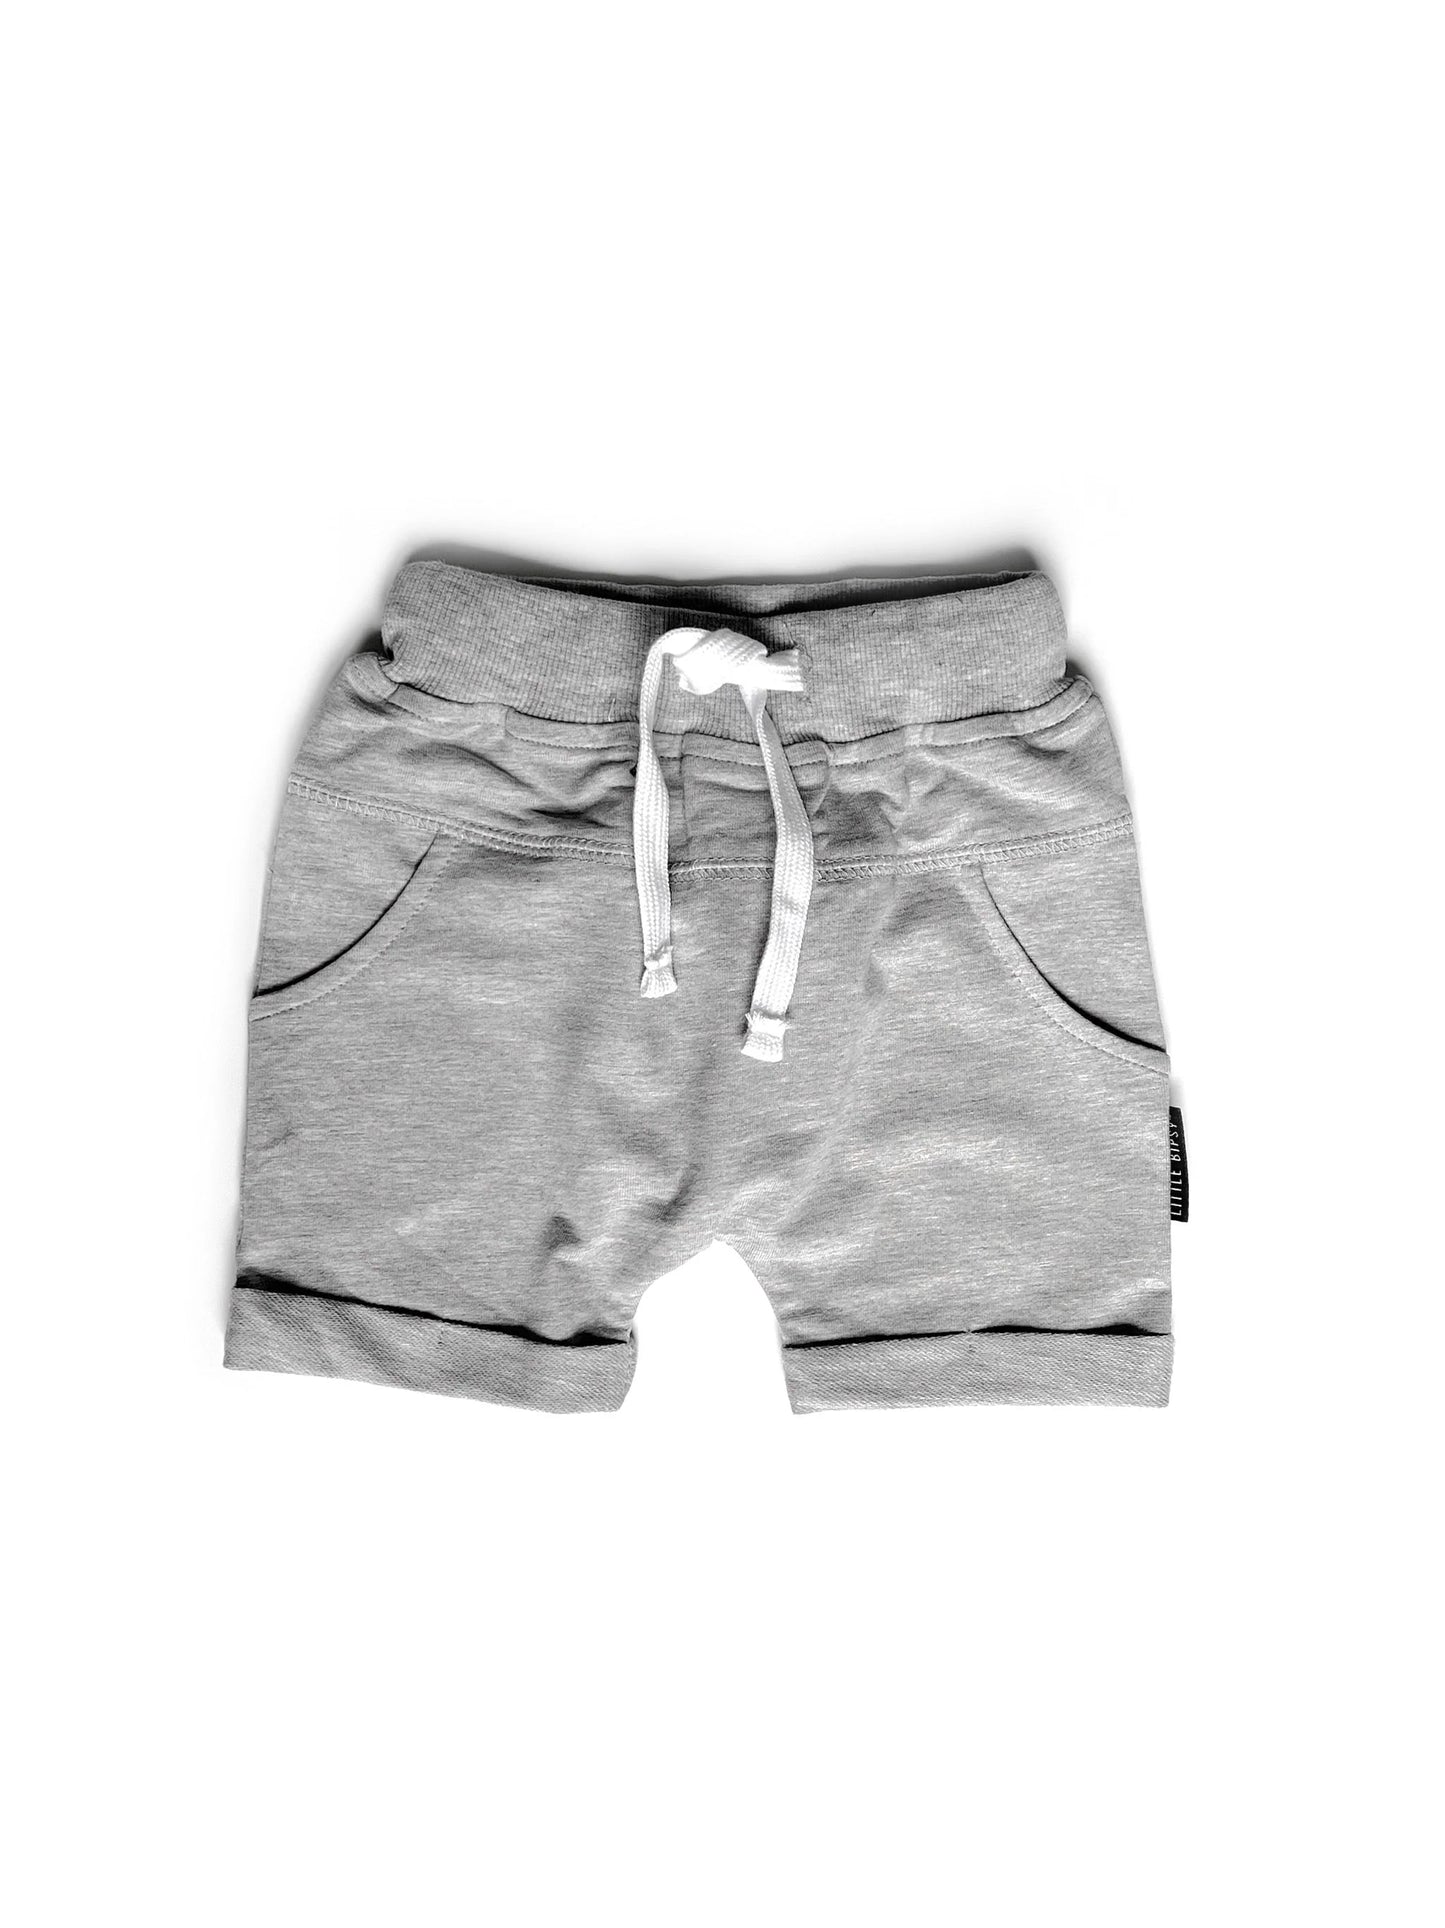 Harem Shorts - Grey